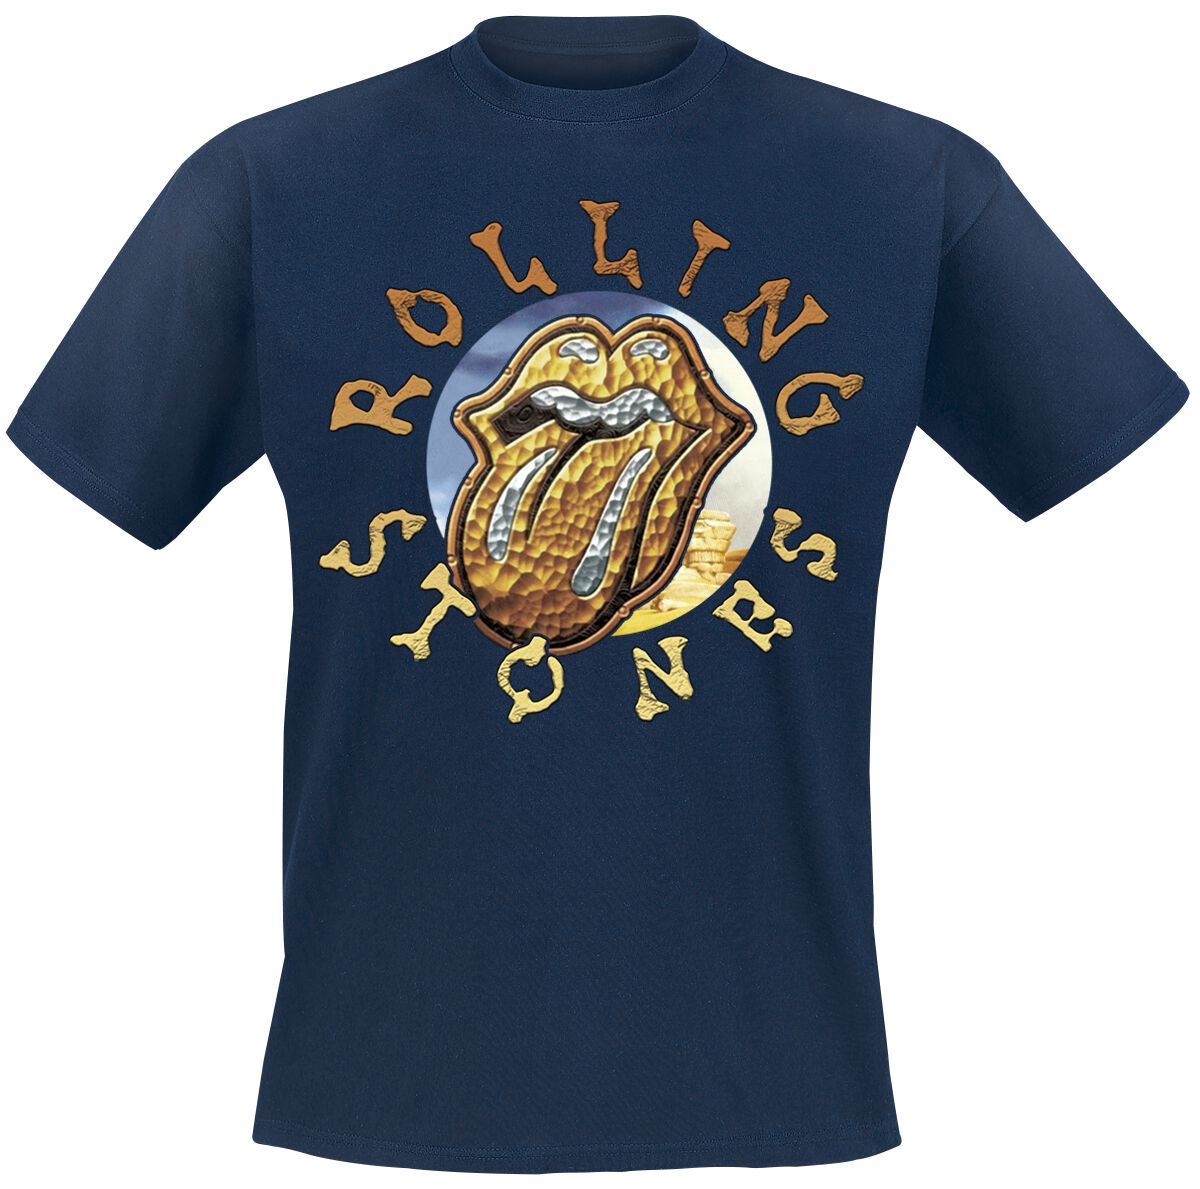 T-Shirt Manches courtes de The Rolling Stones - Dessert Tongue - S à 3XL - pour Homme - marine